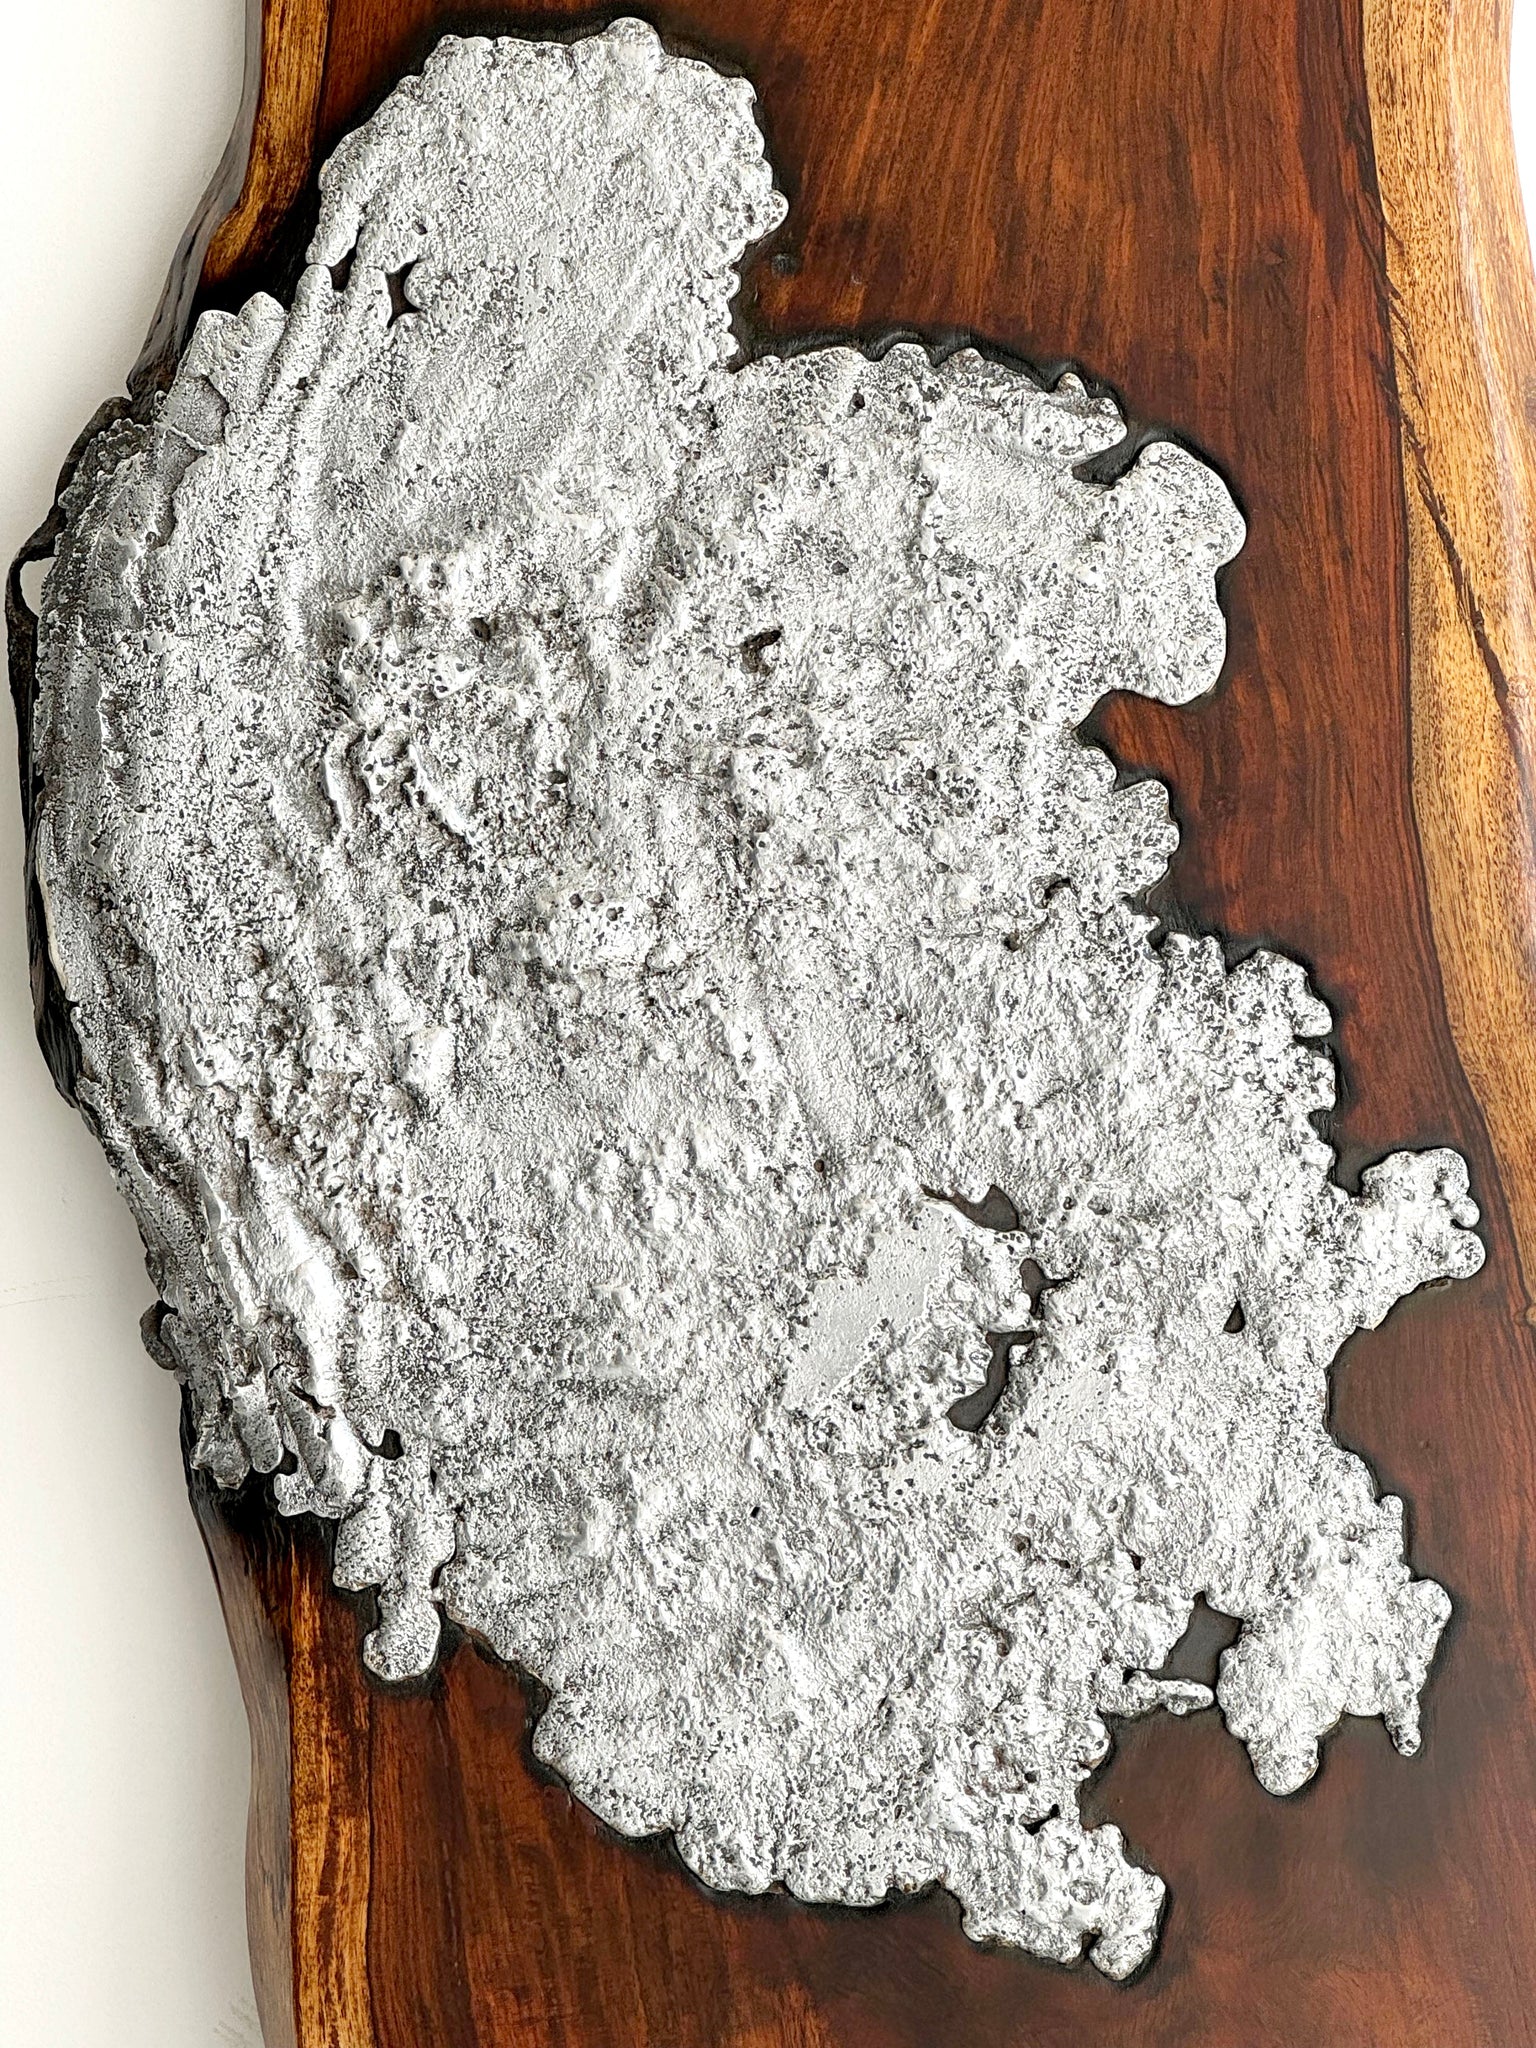 Molten Aluminium on Wood // 05